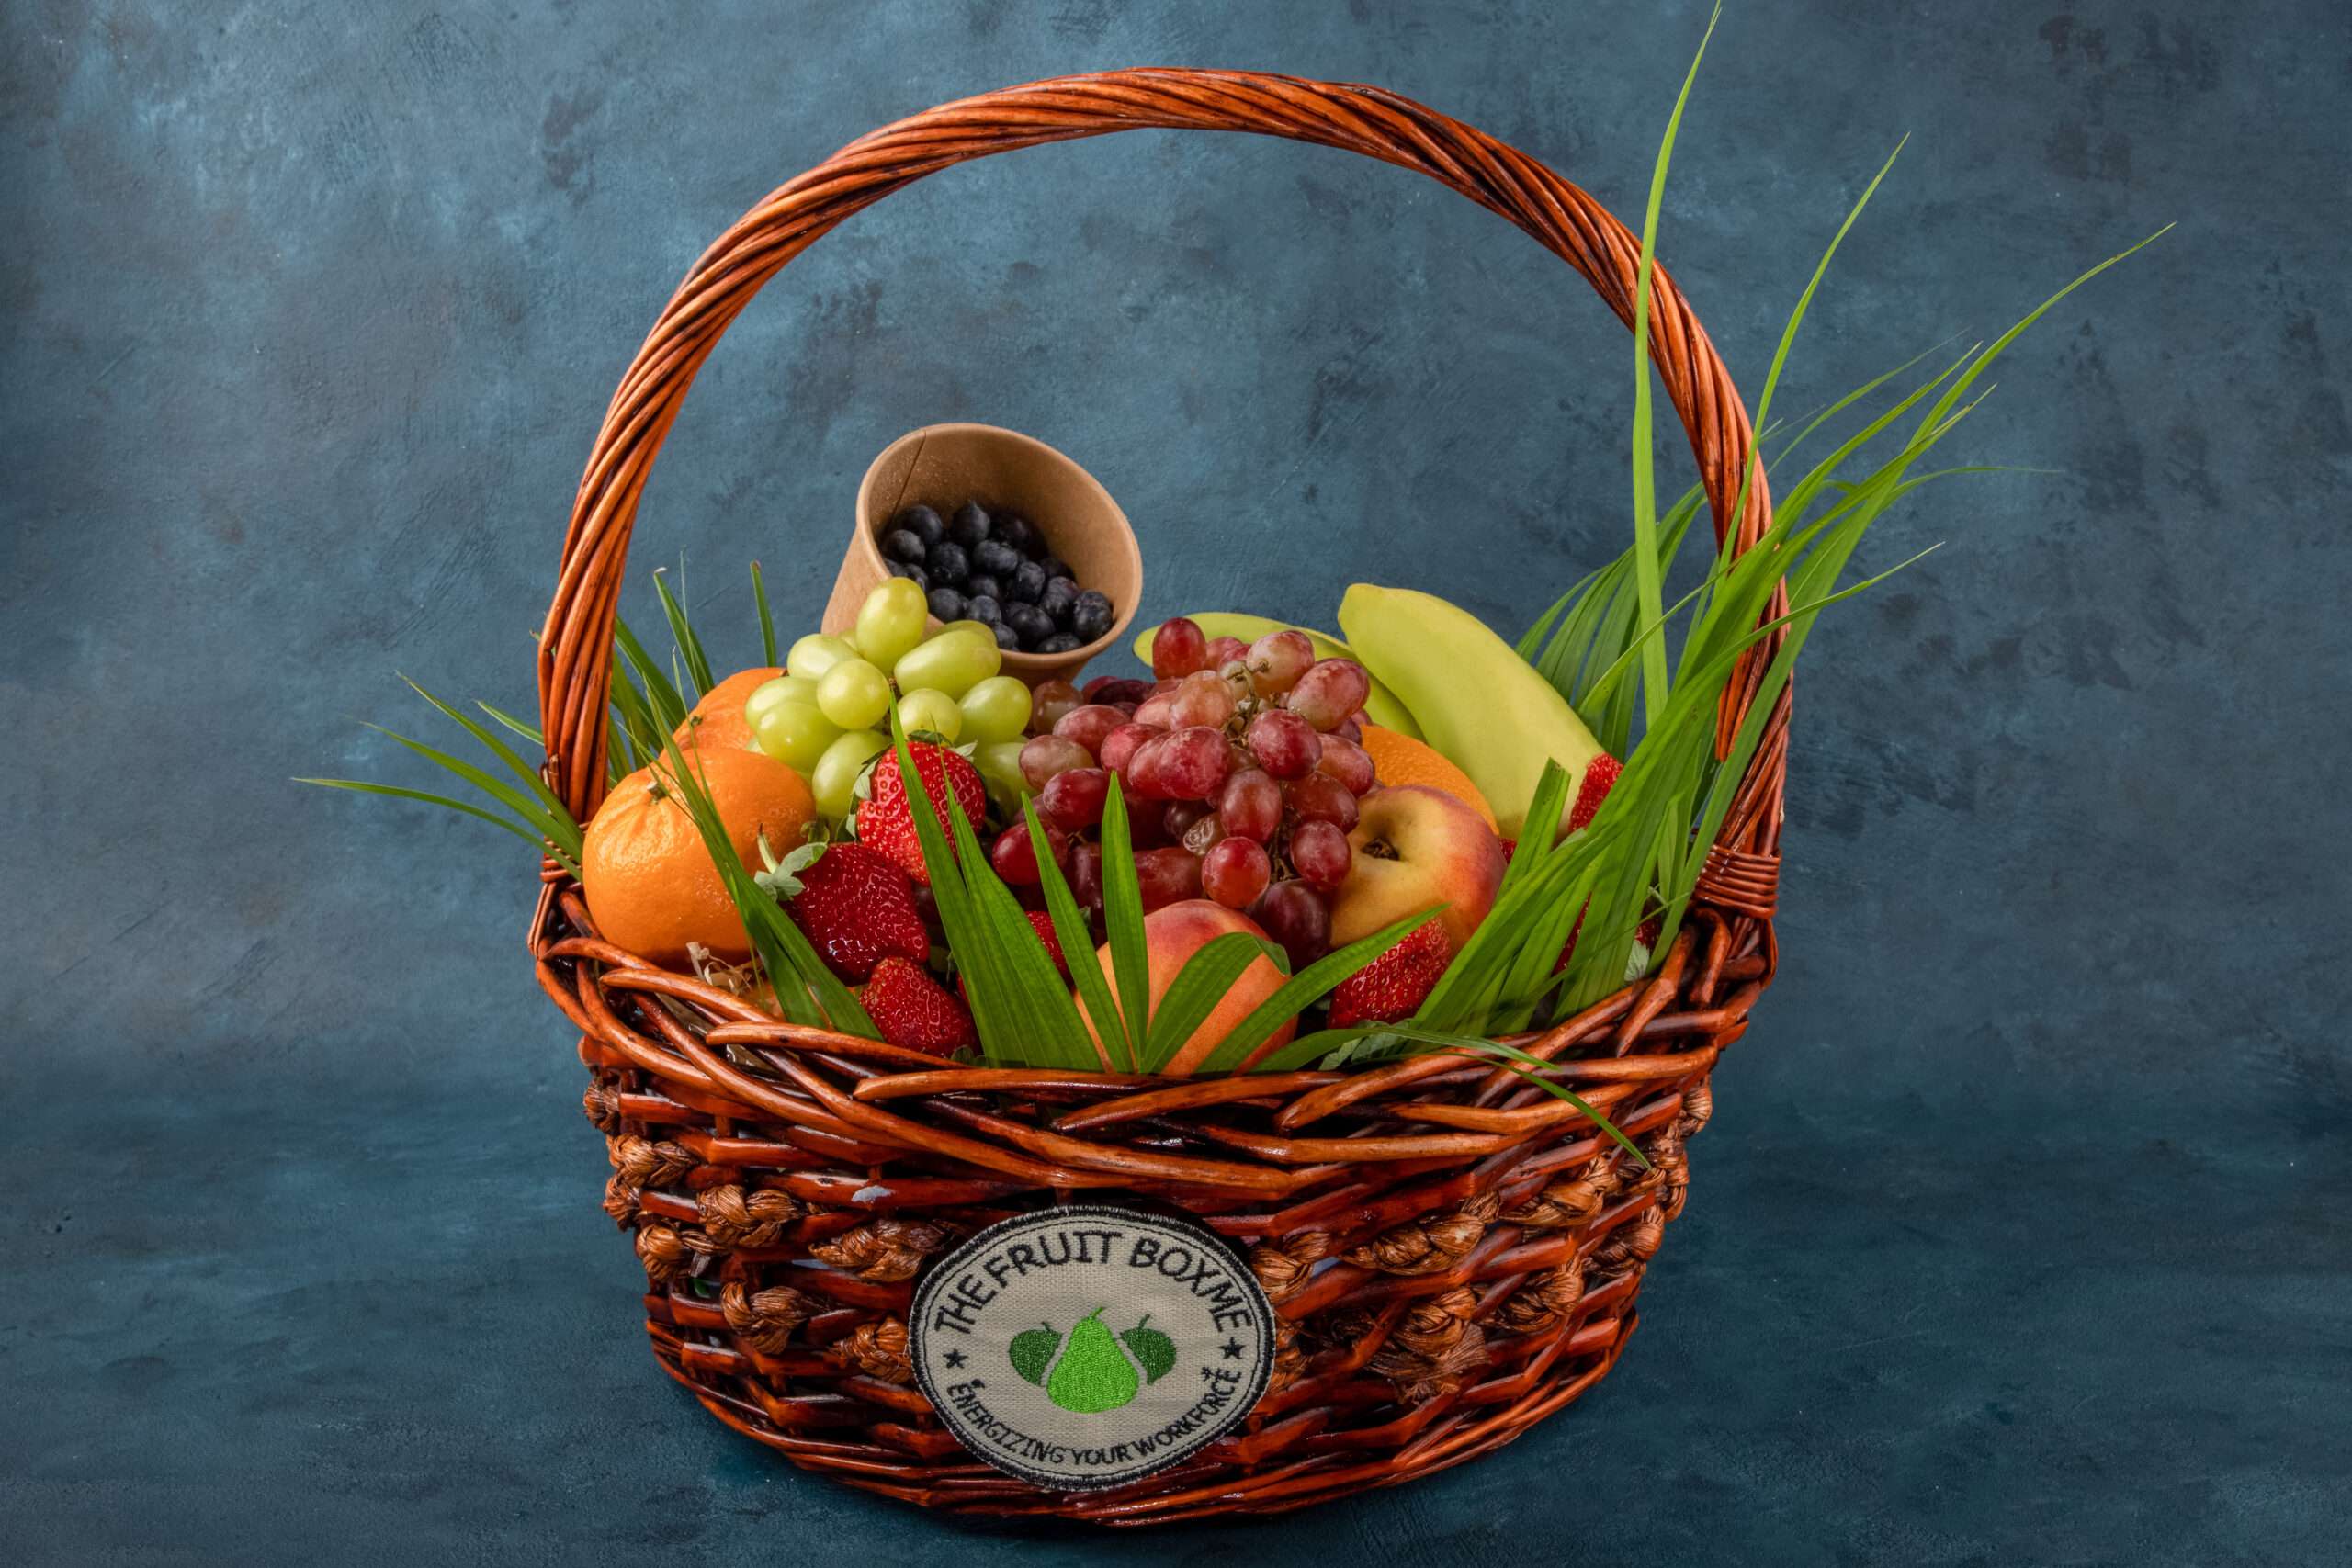 Own Branding Fruit Baskets